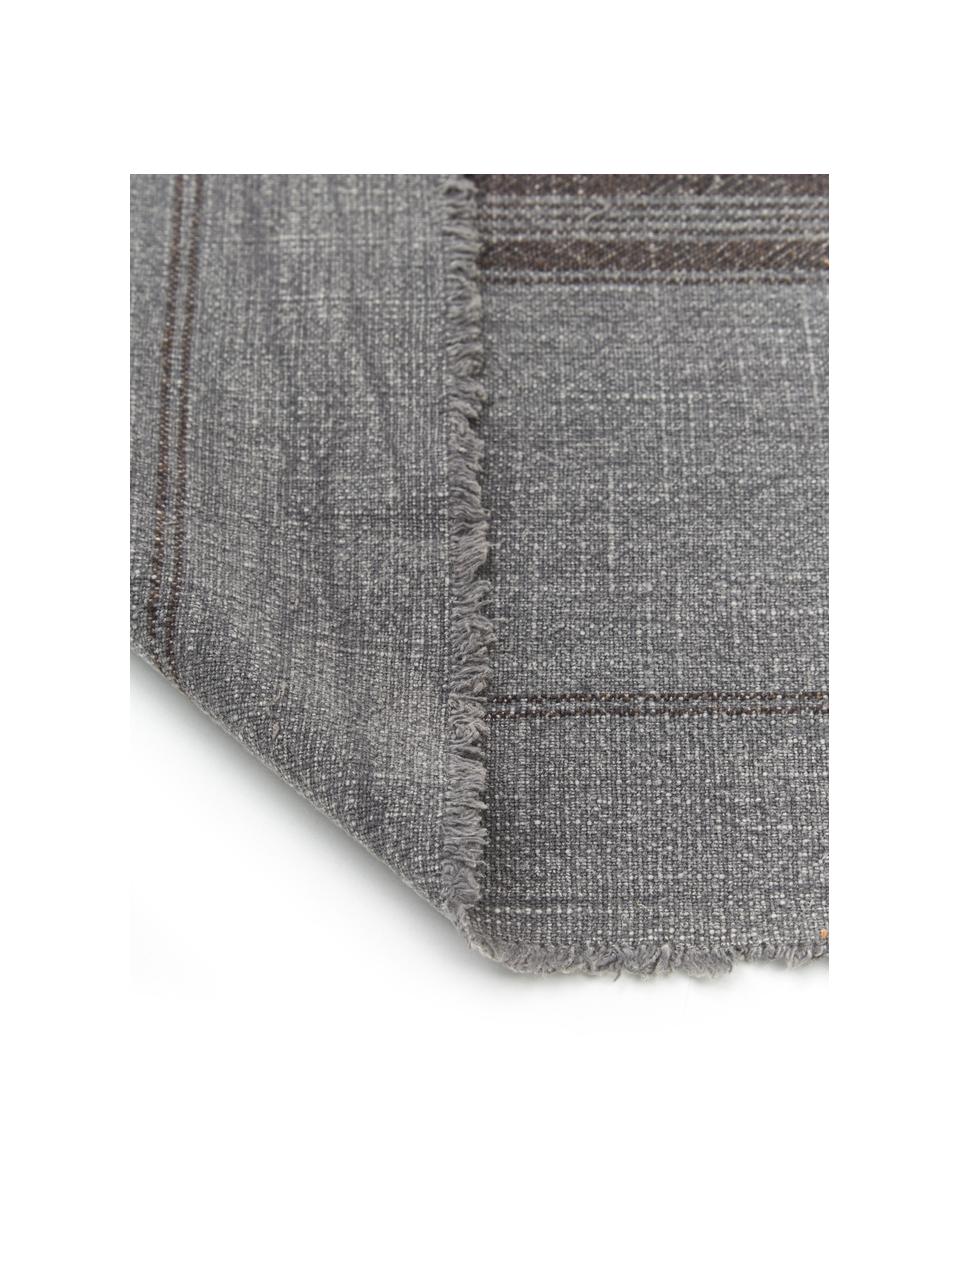 Camino de mesa de algodón con flecos Ripo, 100% algodón, Gris oscuro jaspeado, negro, An 40 x L 140 cm